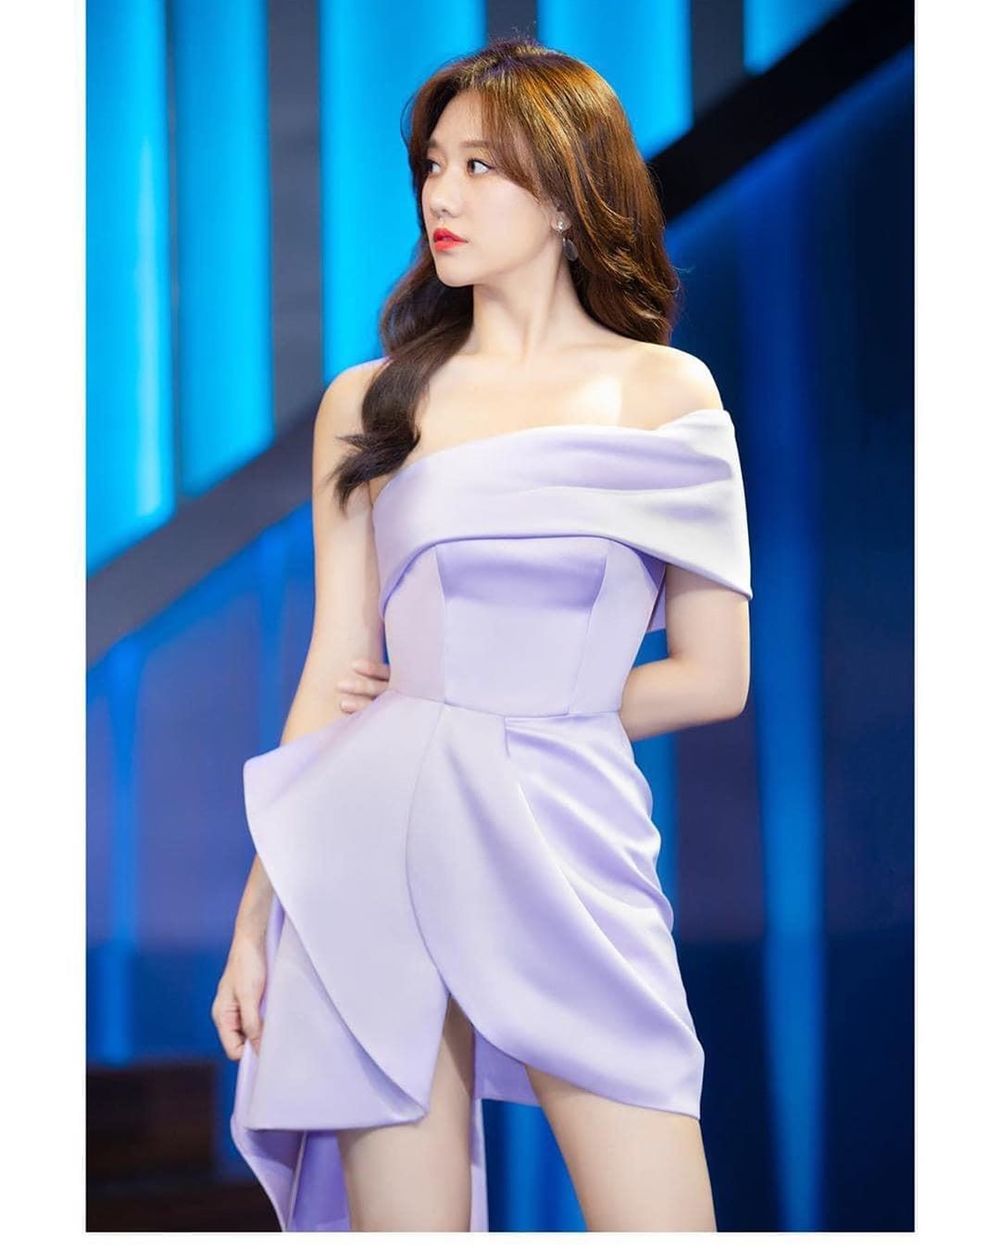  
Hari Won khoe ảnh tham gia gameshow vô cùng xinh đẹp, chiếc váy trễ vai khoe xương quai xanh và tôn vóc dáng thanh mảnh của bà xã Trấn Thành. (Ảnh: FBNV)